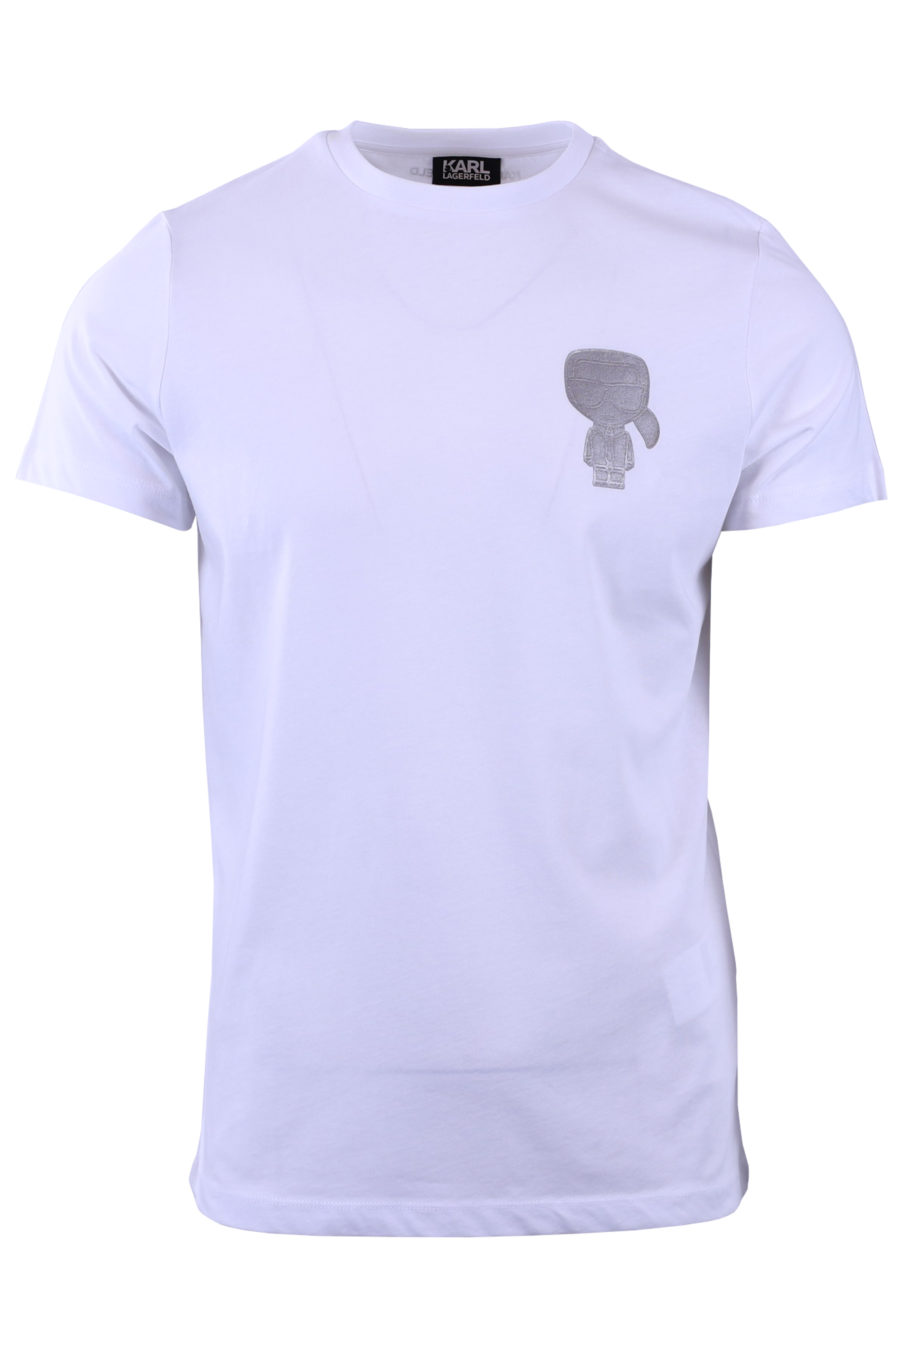 Camiseta blanca con el perfil de Karl plateado - b8454a11d5a3da5c2af3175a9cfb10c67c77e02b